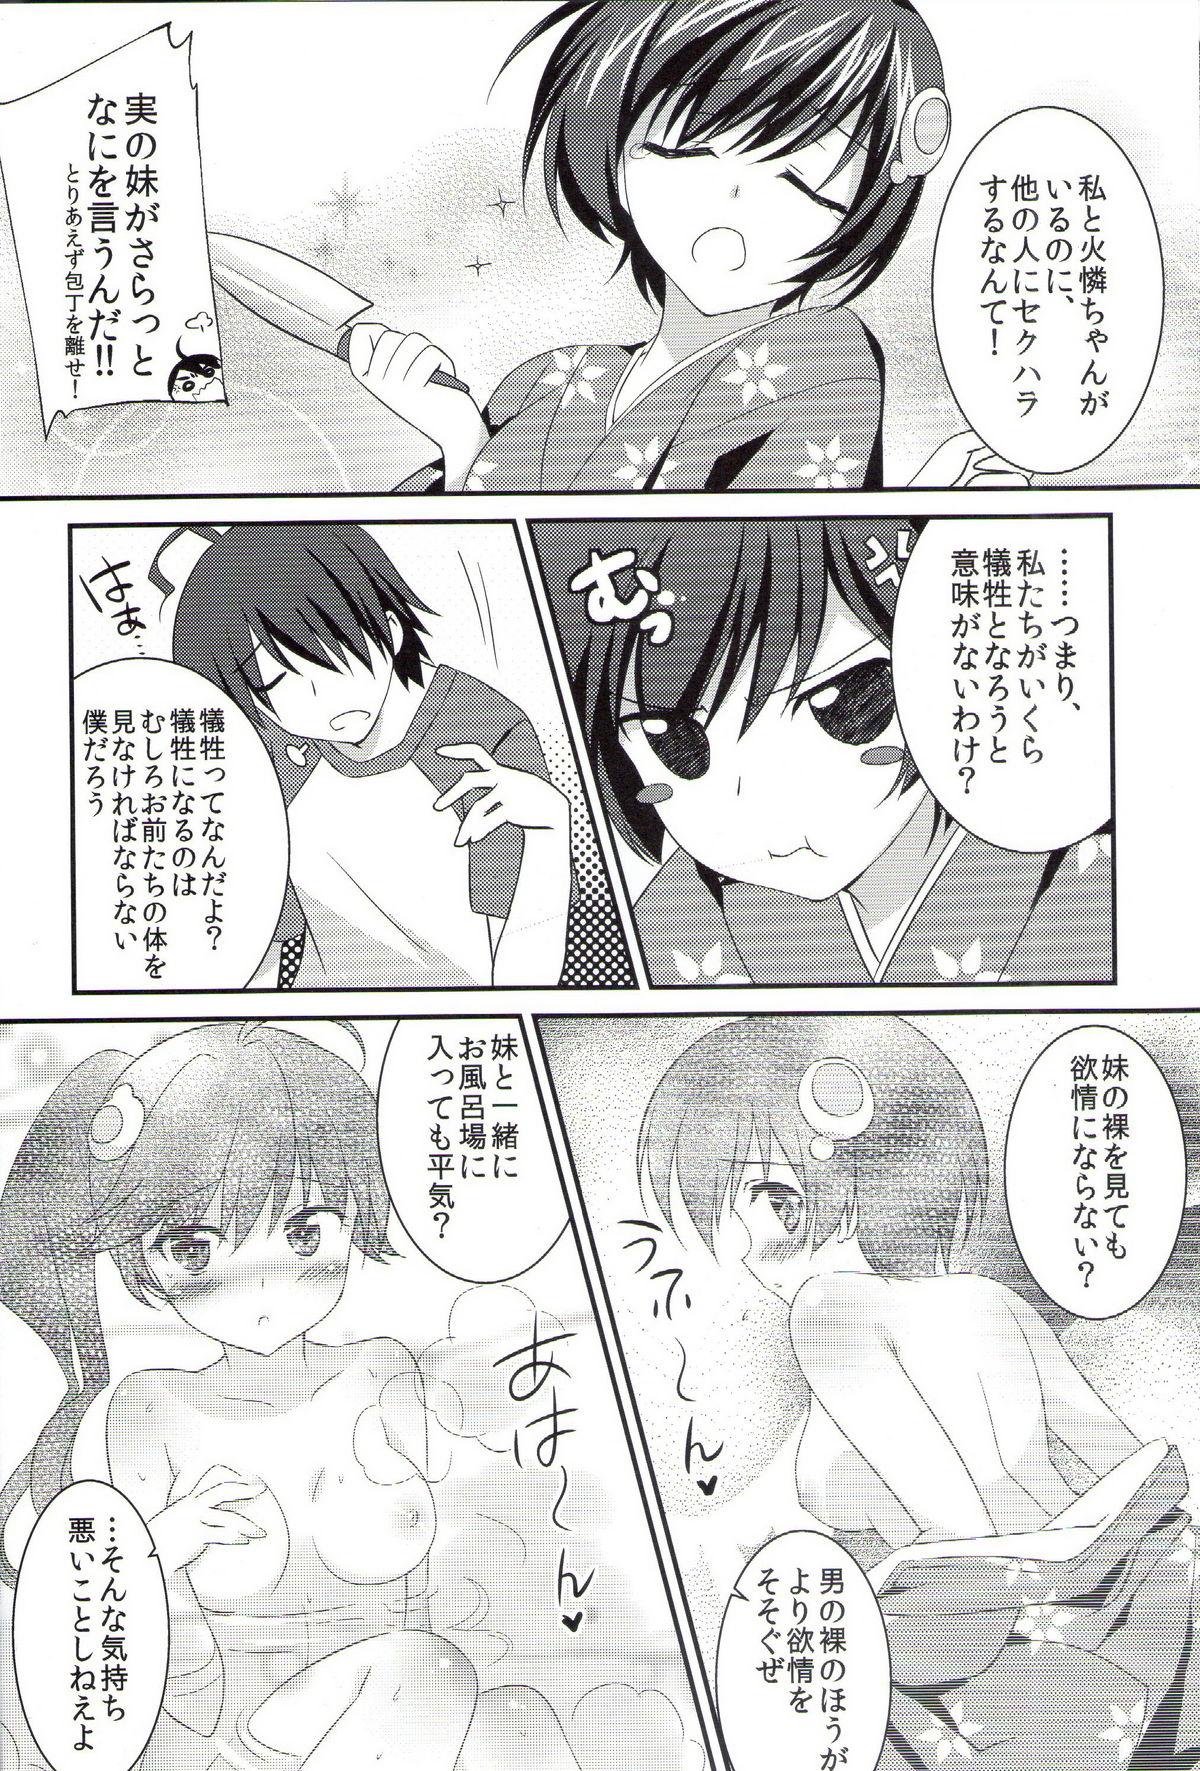 Bottom Boku to Karen to Tsukihi ga Shuraba sugiru - Bakemonogatari Coeds - Page 5